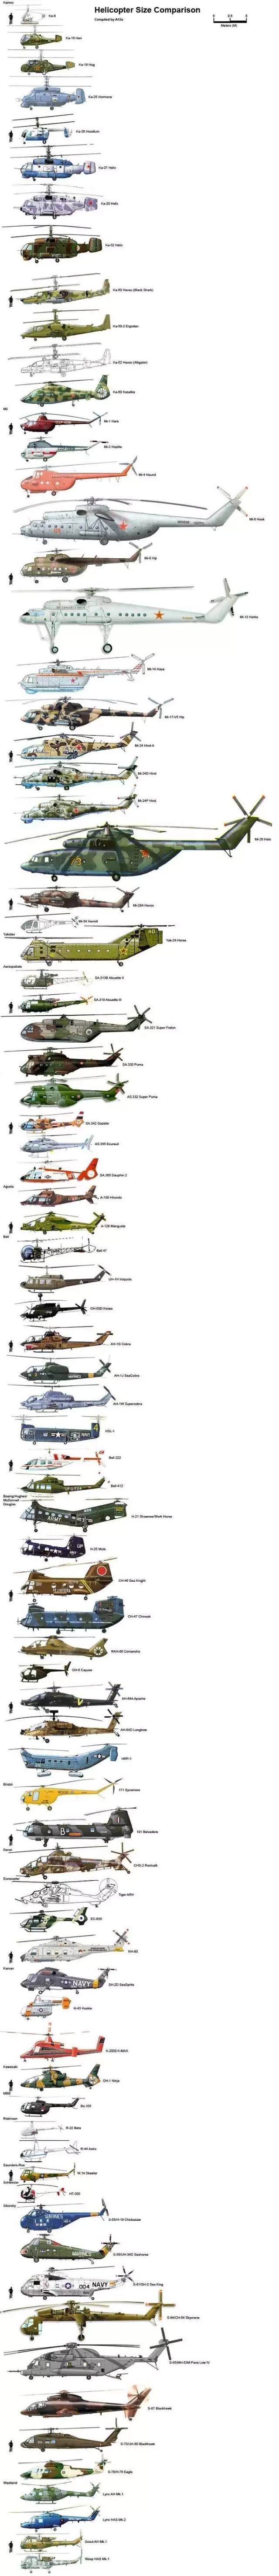 波音737自愧不如的竟然是俄罗斯的米26直升机你知道他有多大吗